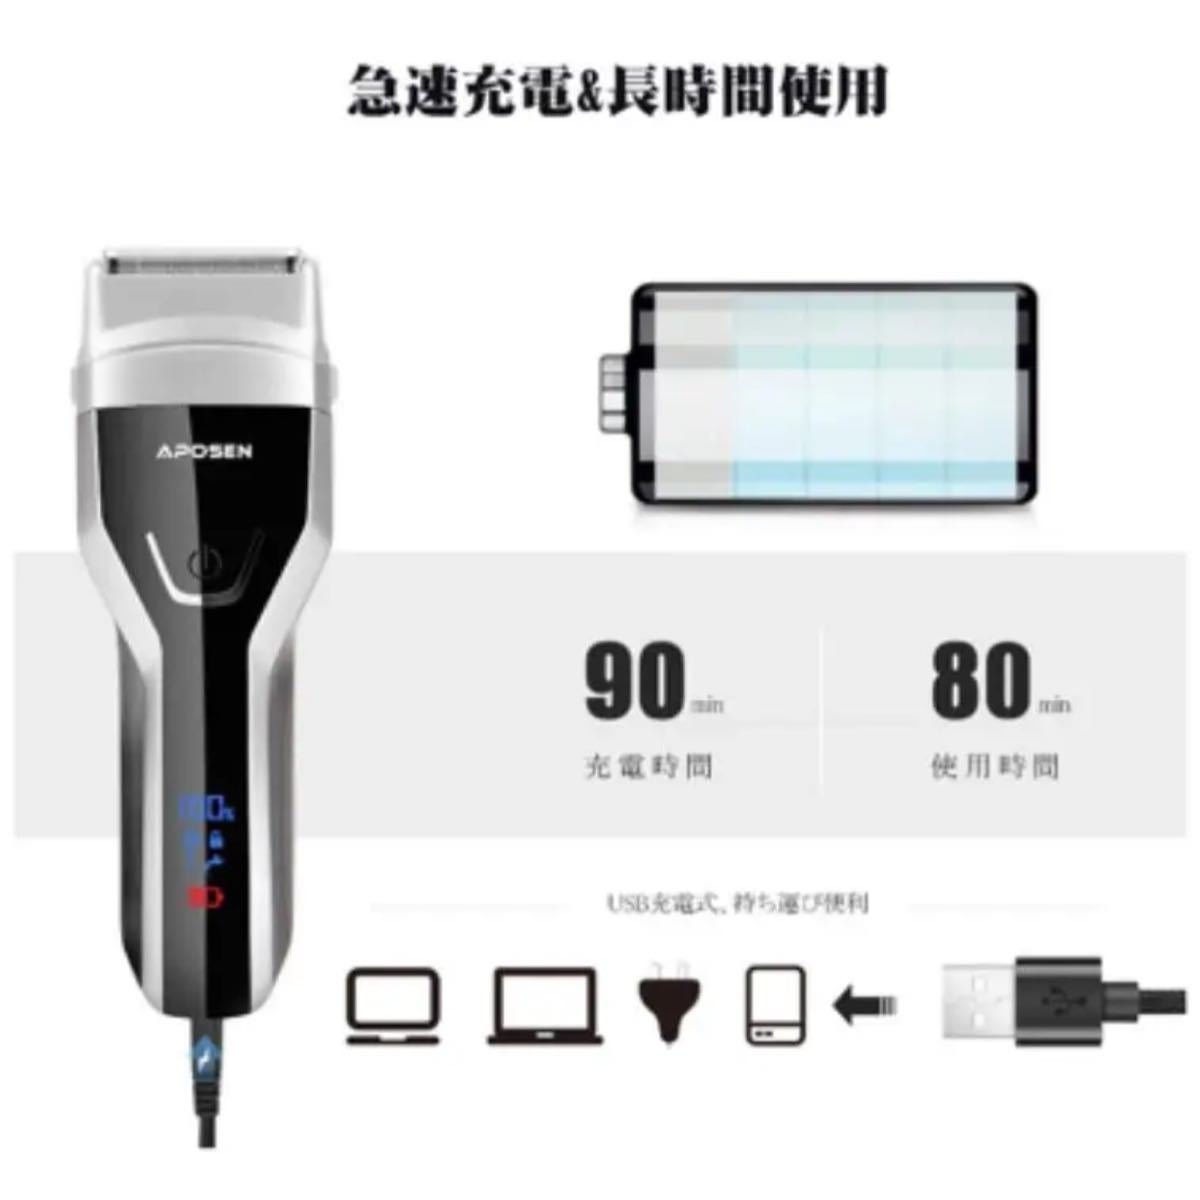 アポセン 電気シェーバー メンズシェーバー 多機能ひげそり 往復式 カミソリ LEDディスプレー USB充電式 水洗い可